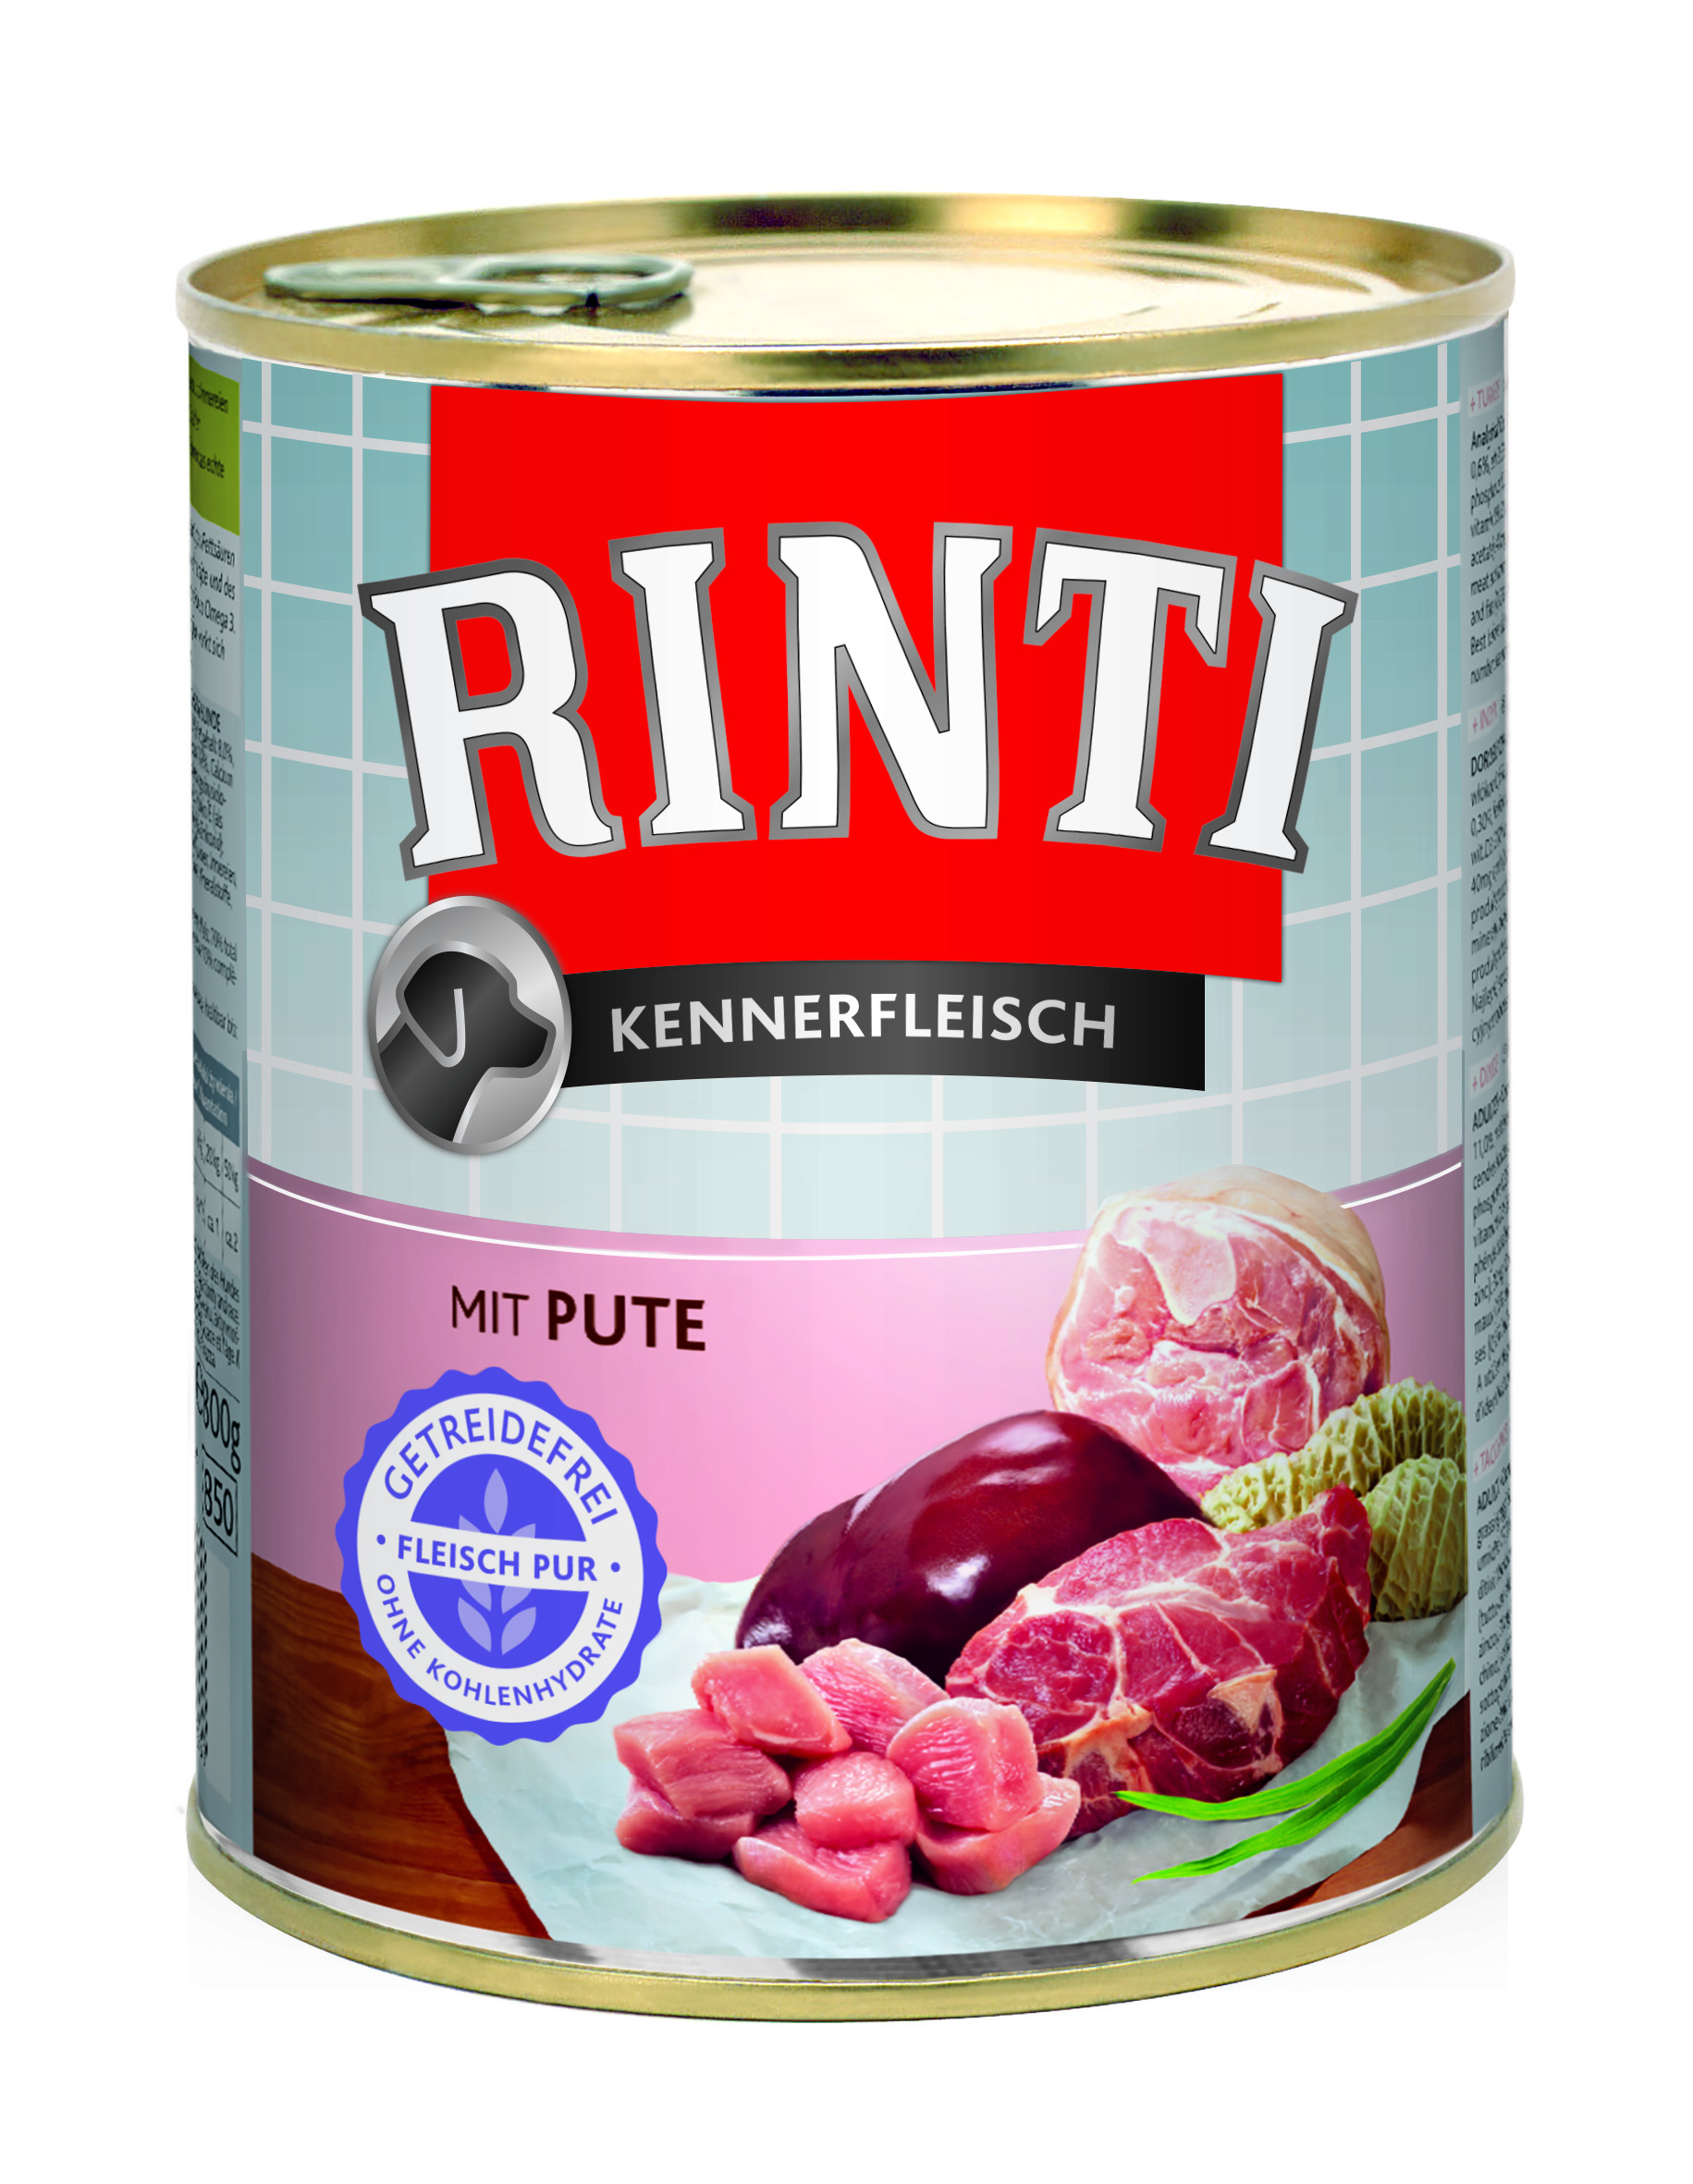 Rinti Kennerfleisch - mit Pute